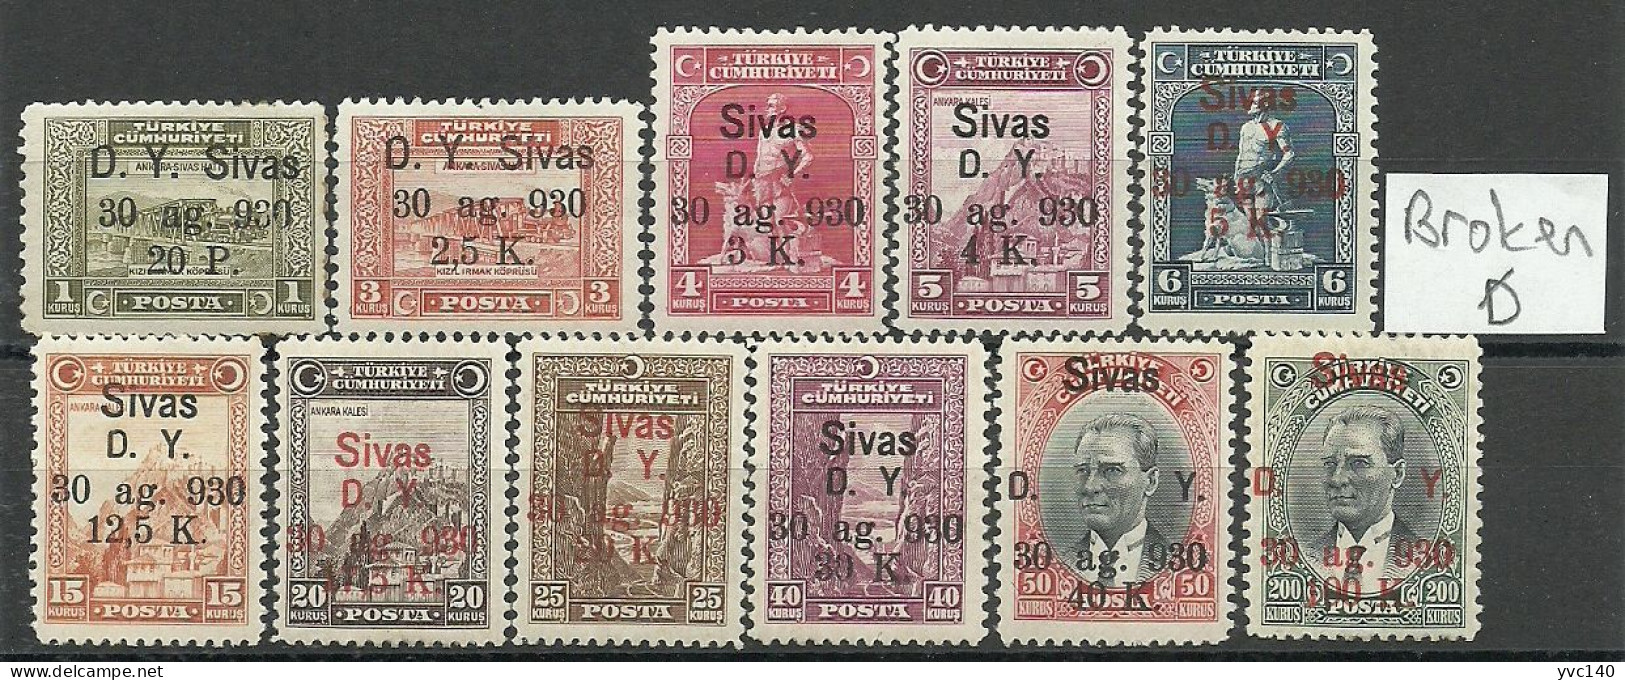 Turkey; 1930 Ankara-Sivas Railway Stamps "Broken (D)" ERROR MNH**/MH* RRR - Ungebraucht